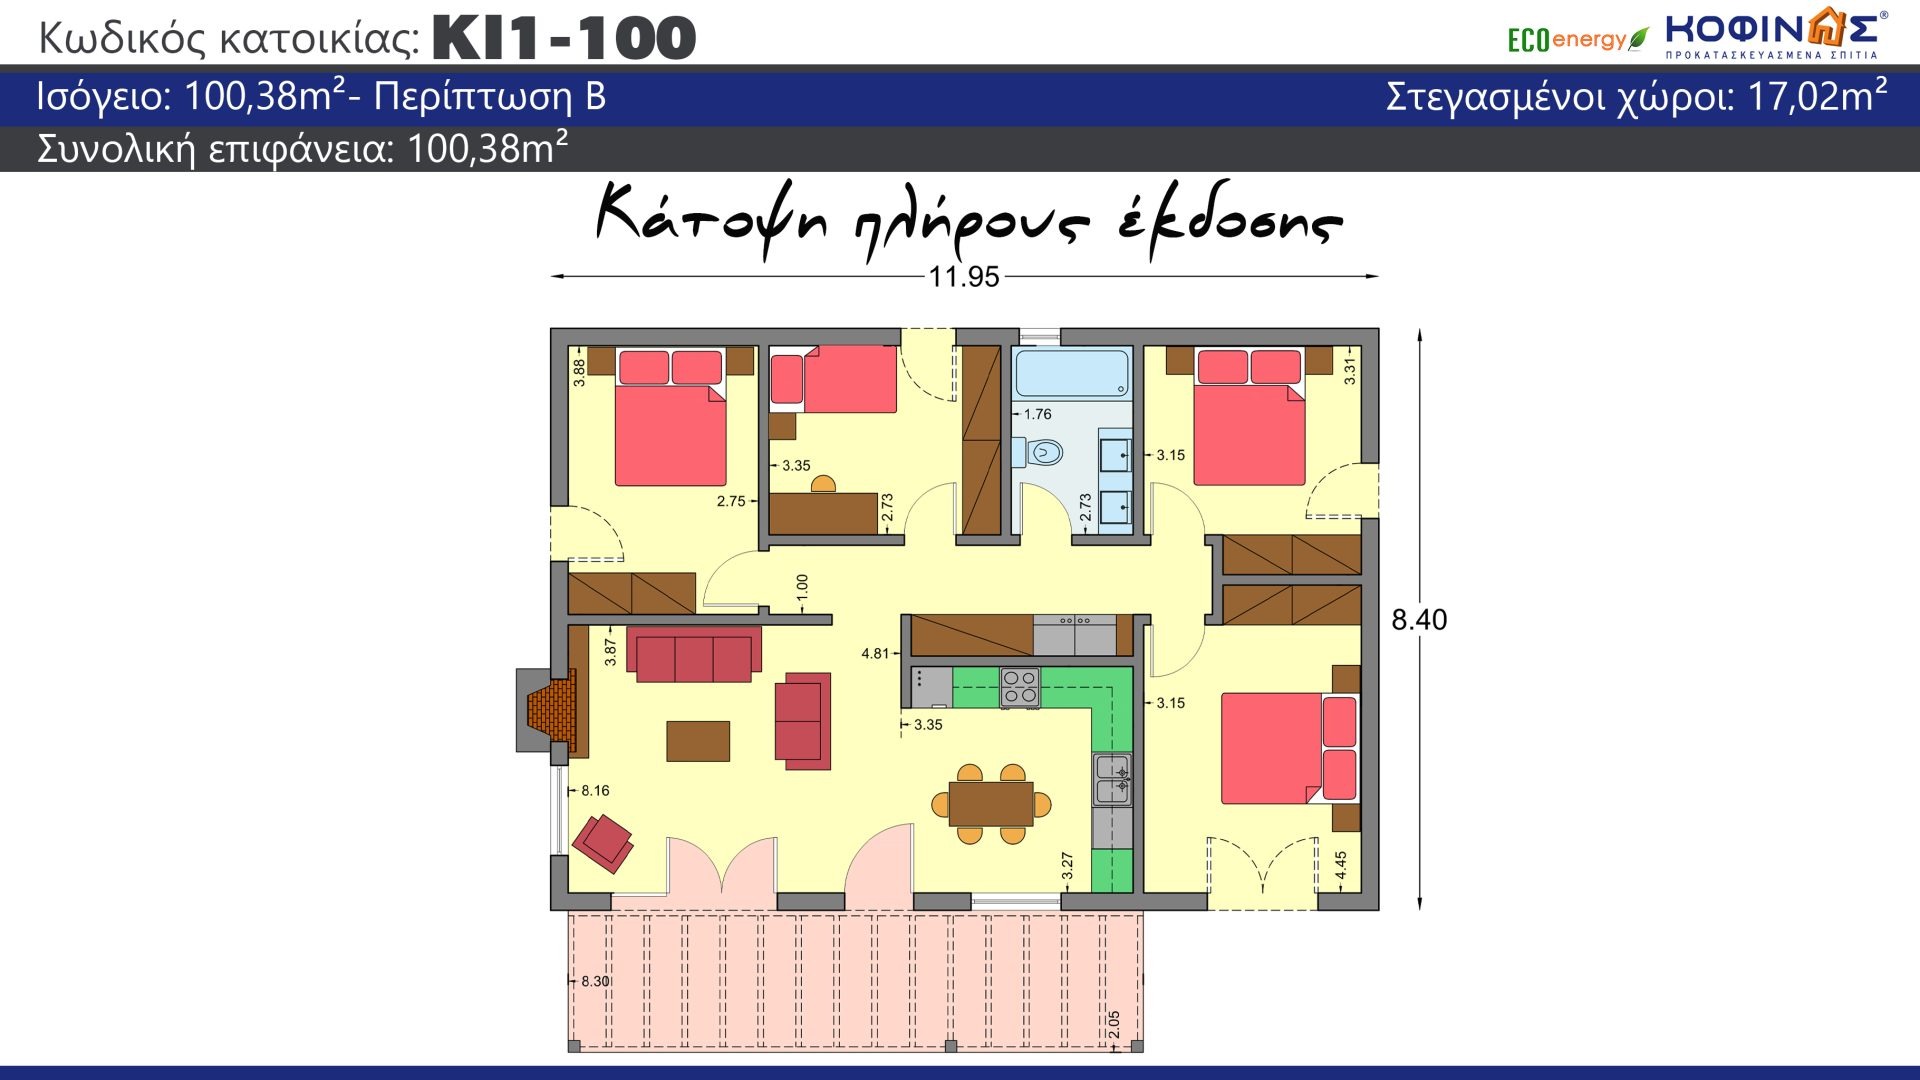 Ισόγεια Κατοικία ΚI1-100 συνολικής επιφάνειας 100,38 τ.μ., στεγασμένοι χώροι 17,02 τ.μ